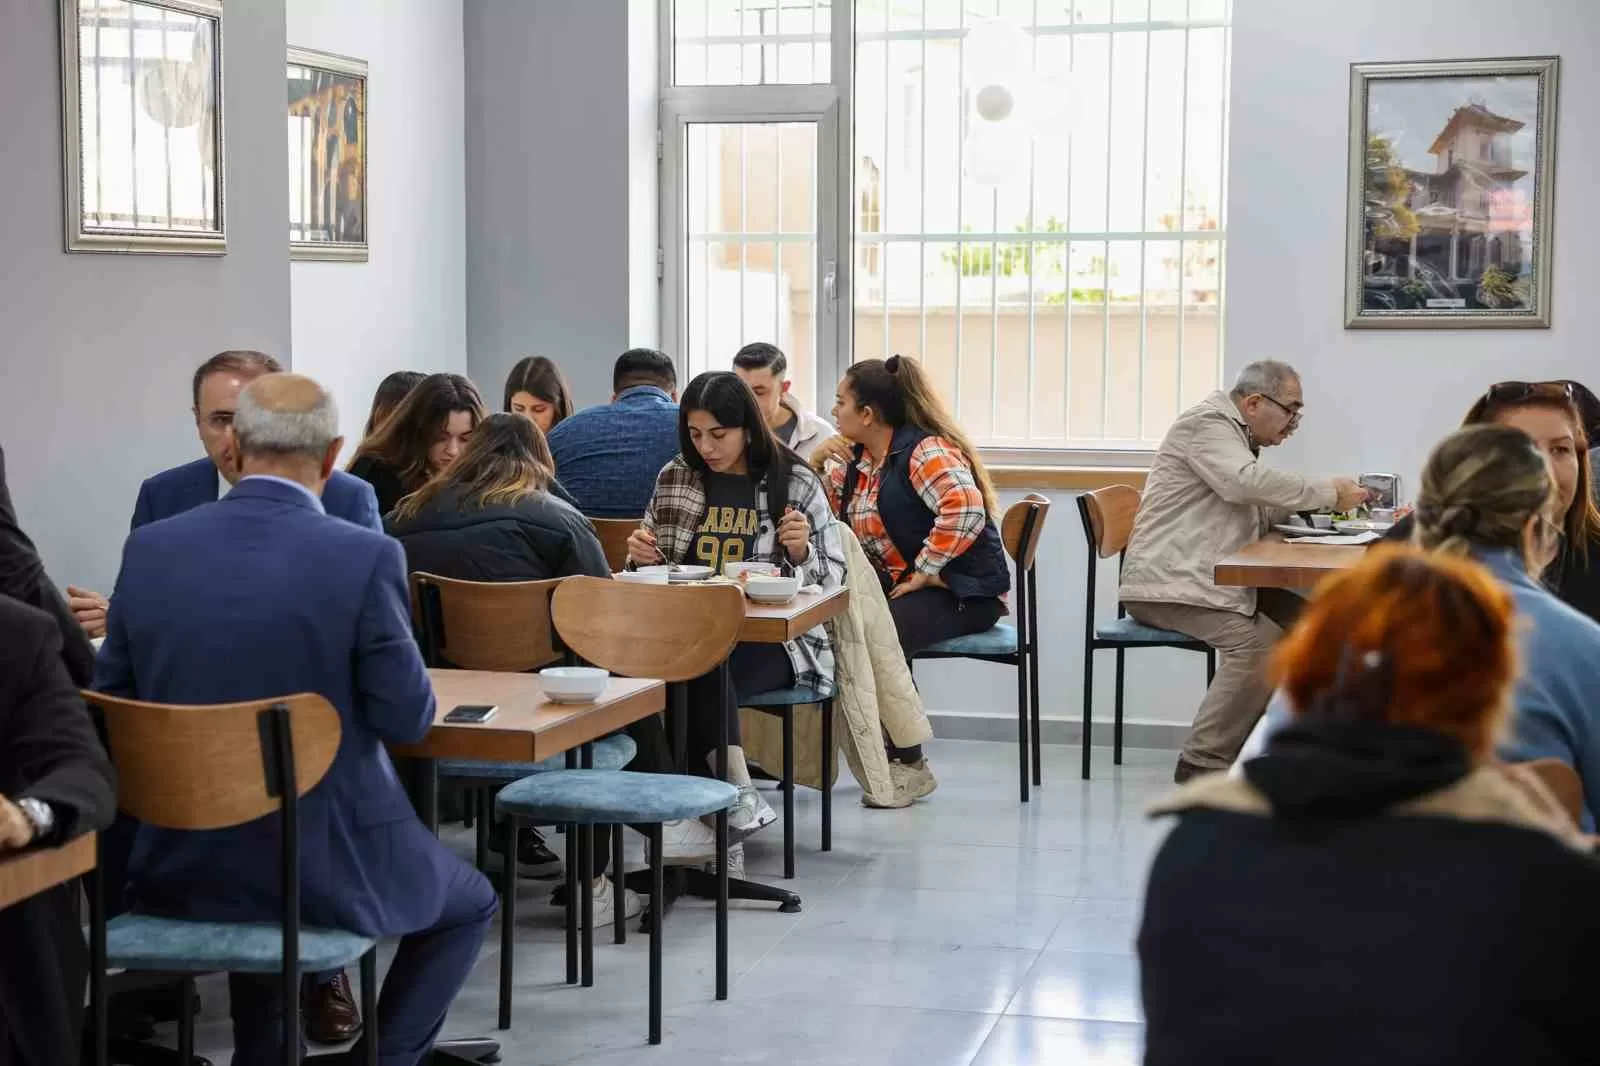 İzmir'in Buca ilçesinde, öğrencilere ve ihtiyaç sahiplerine hizmet verecek Belediye Lokantası açıldı. 